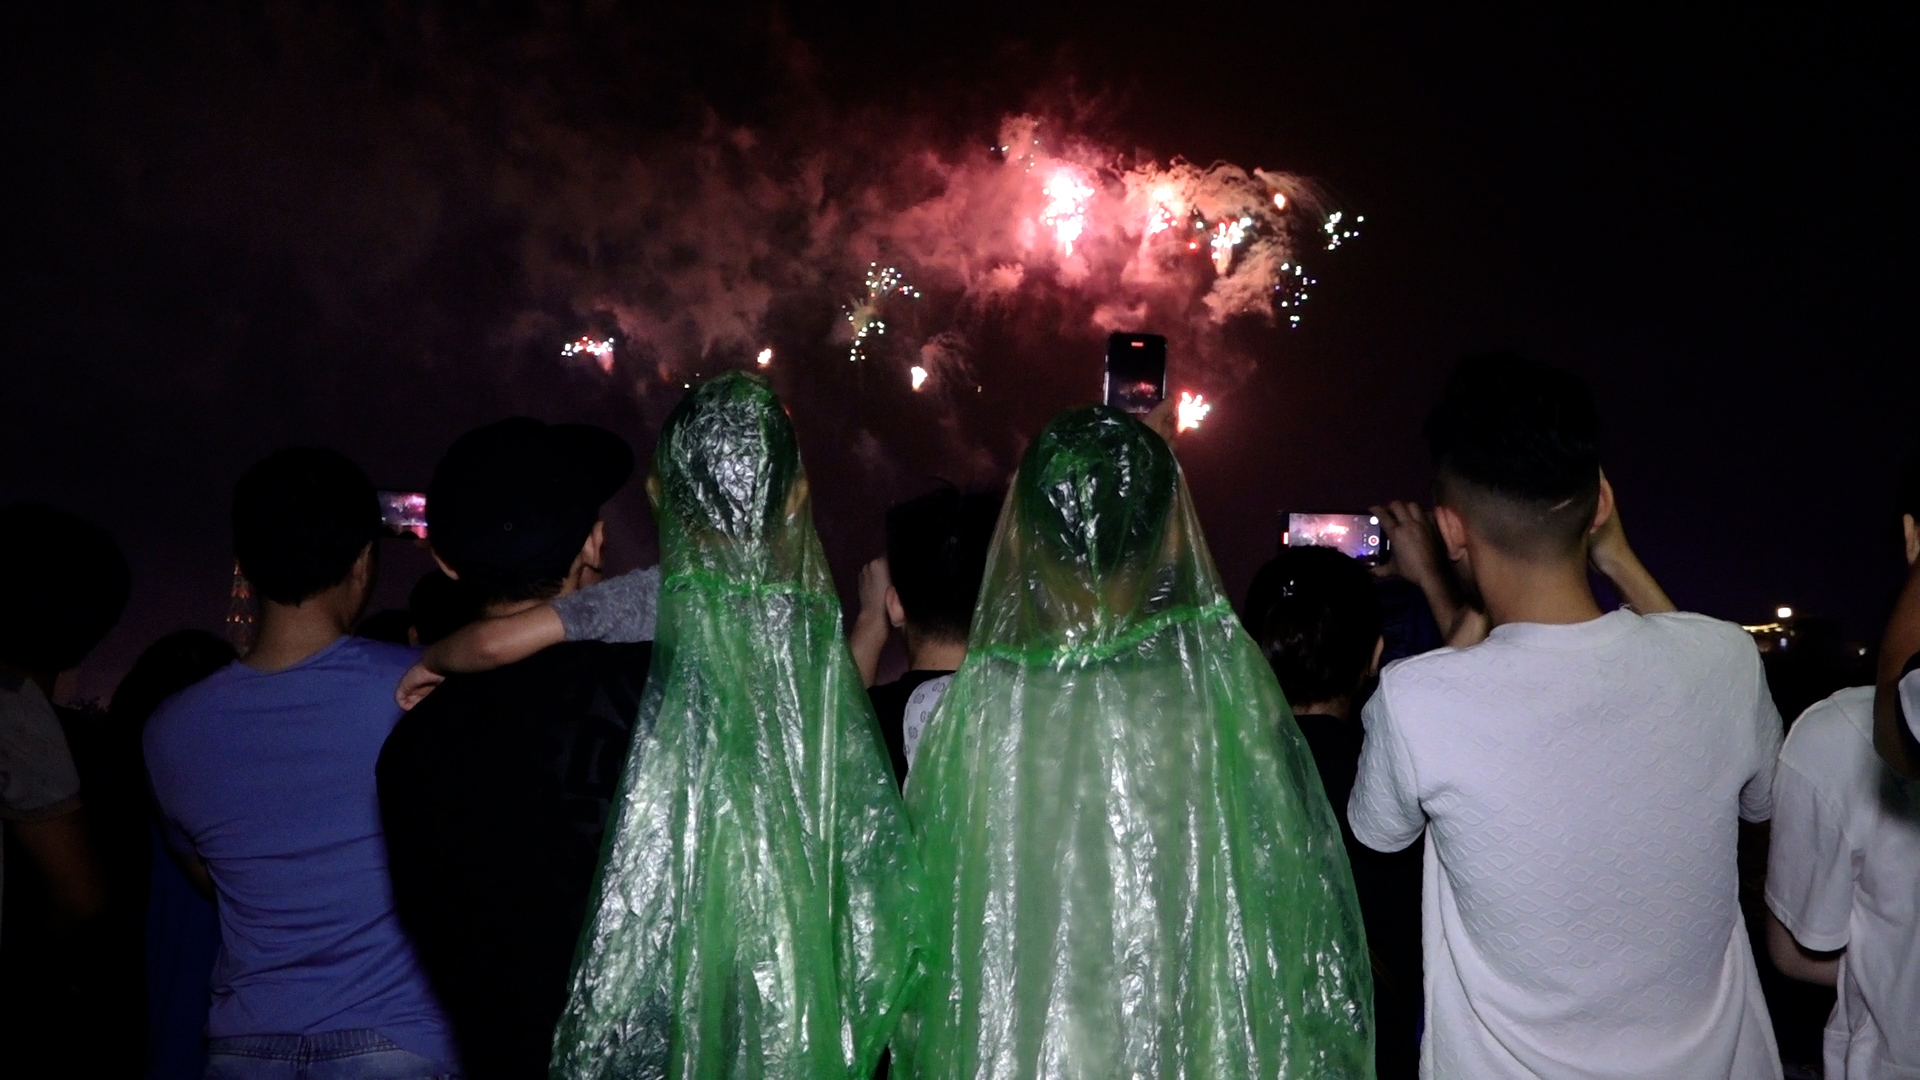 Hàng nghìn người đội mưa xem pháo hoa ở Phú Thọ - ảnh 9